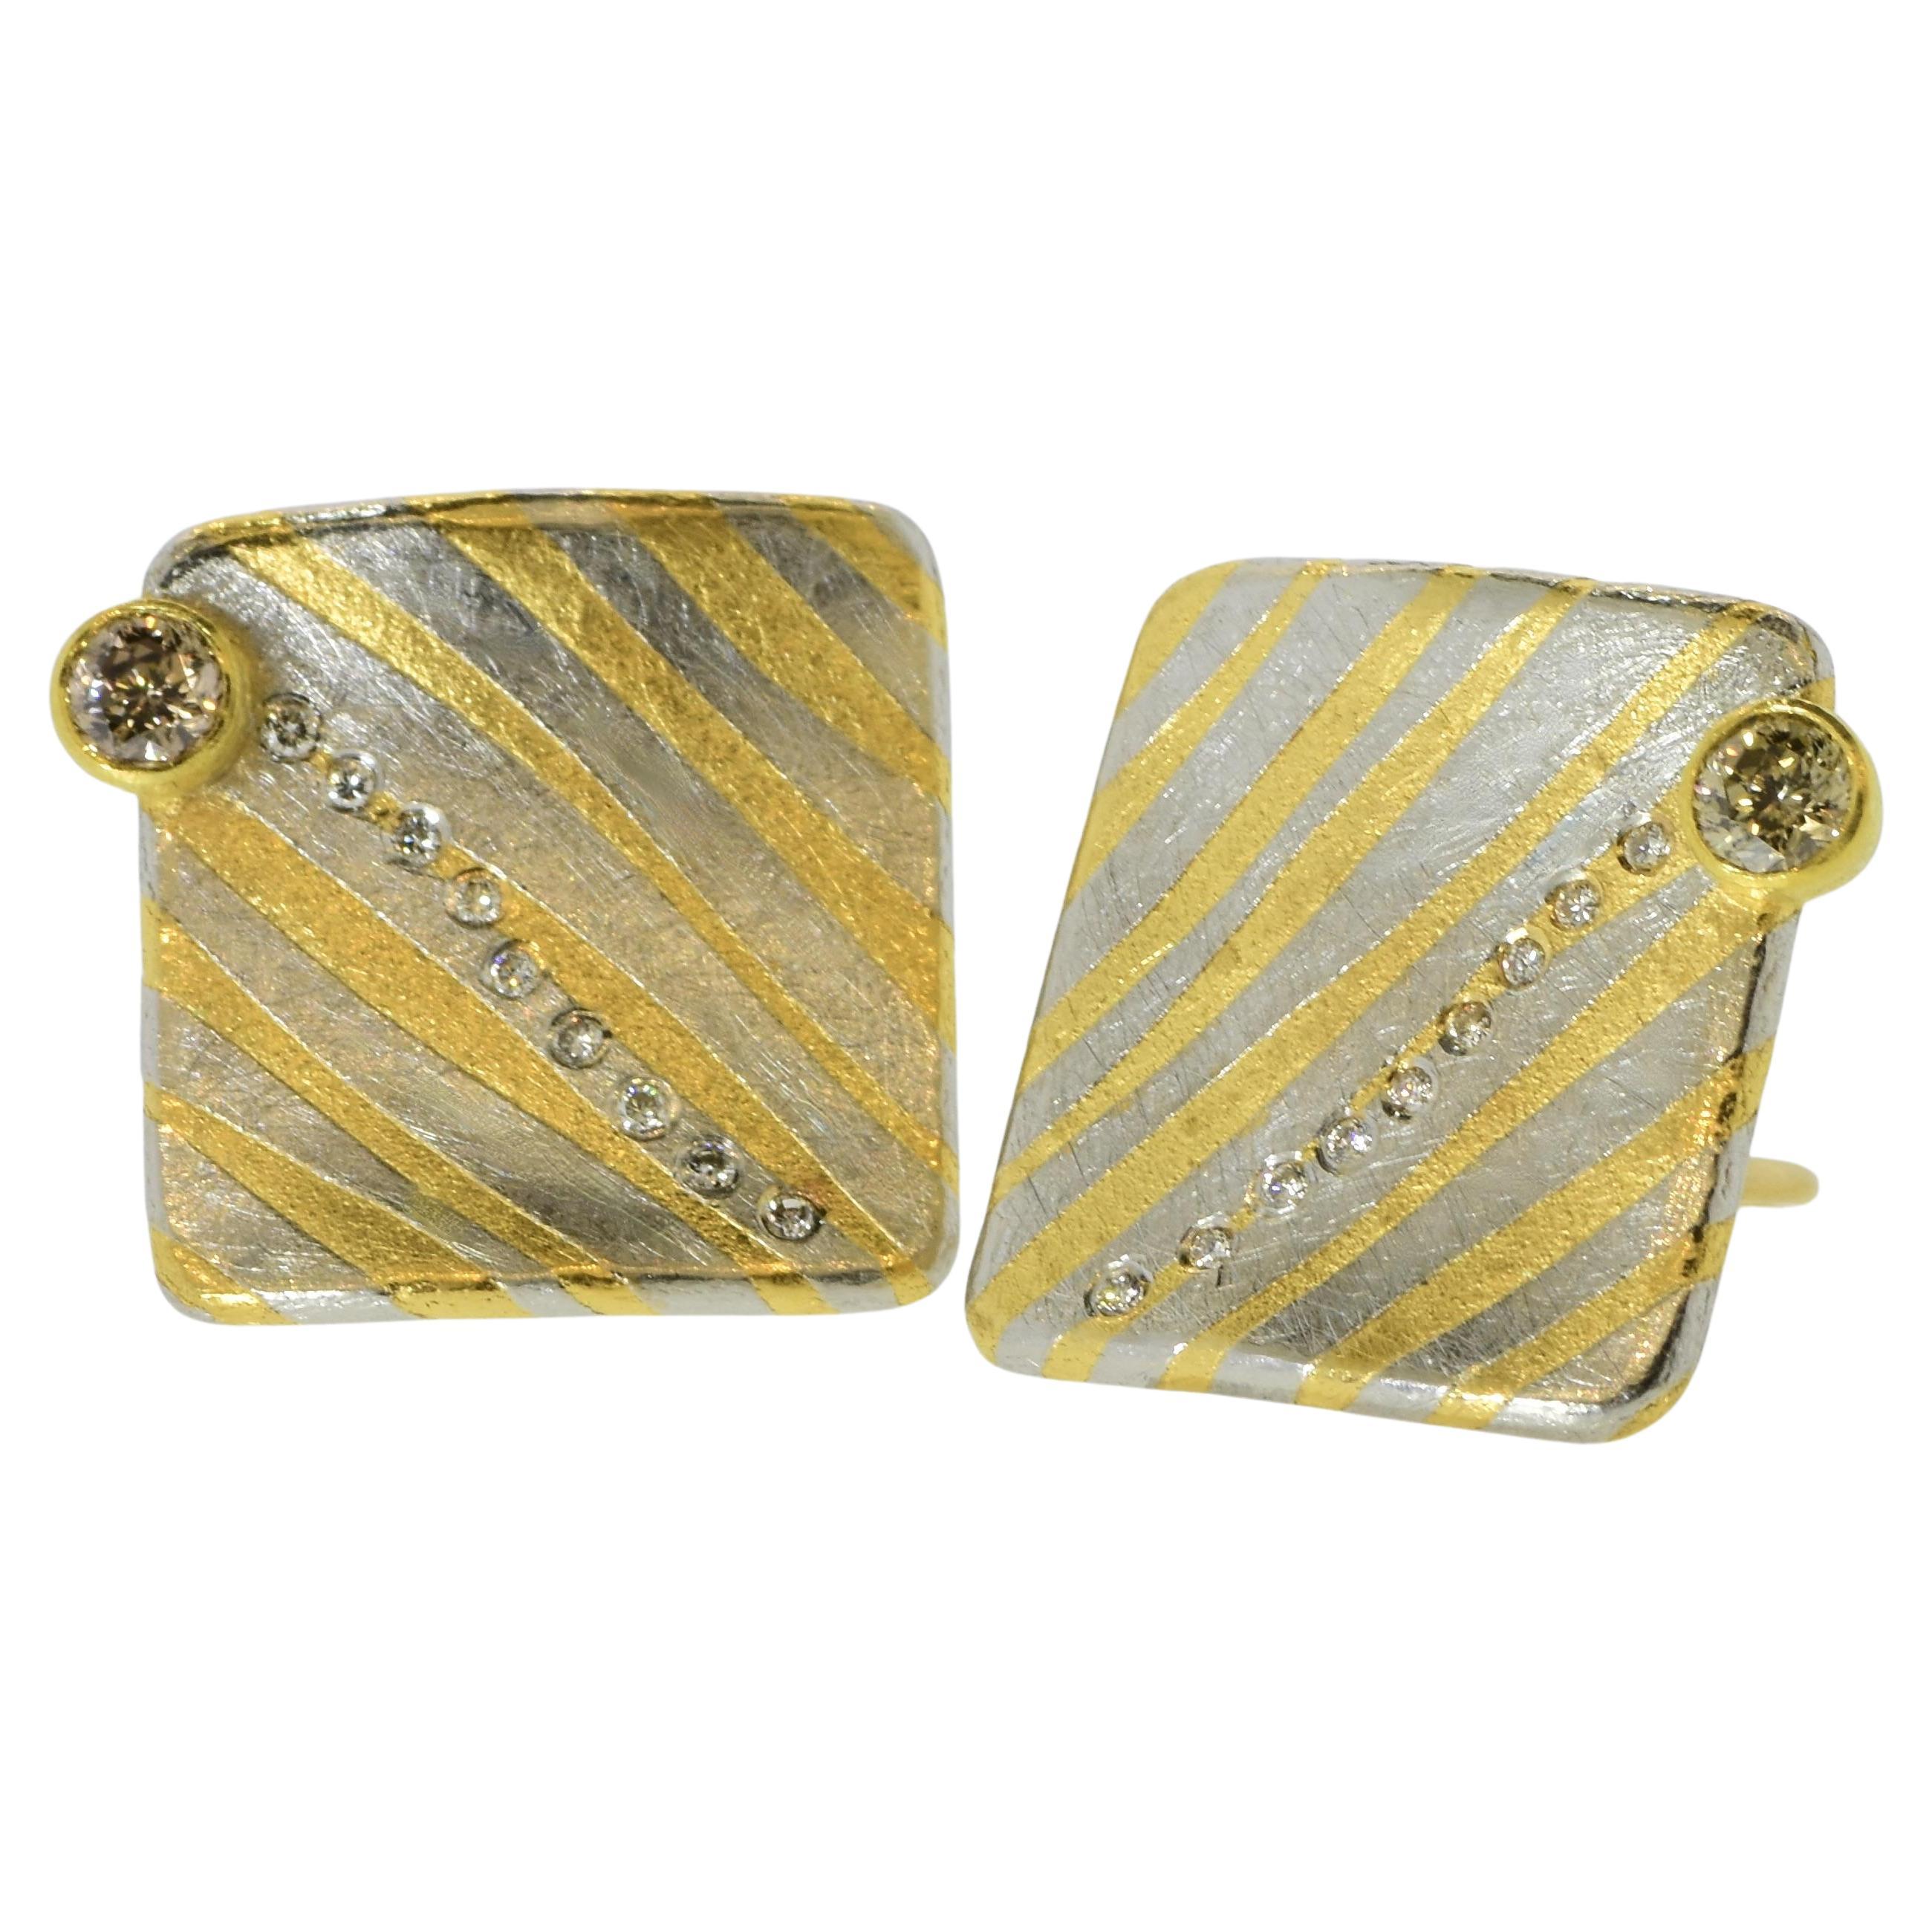 Michael Zobel 18K, Sterling Silver, Diamond & Fancy Colored Diamond Earrings.